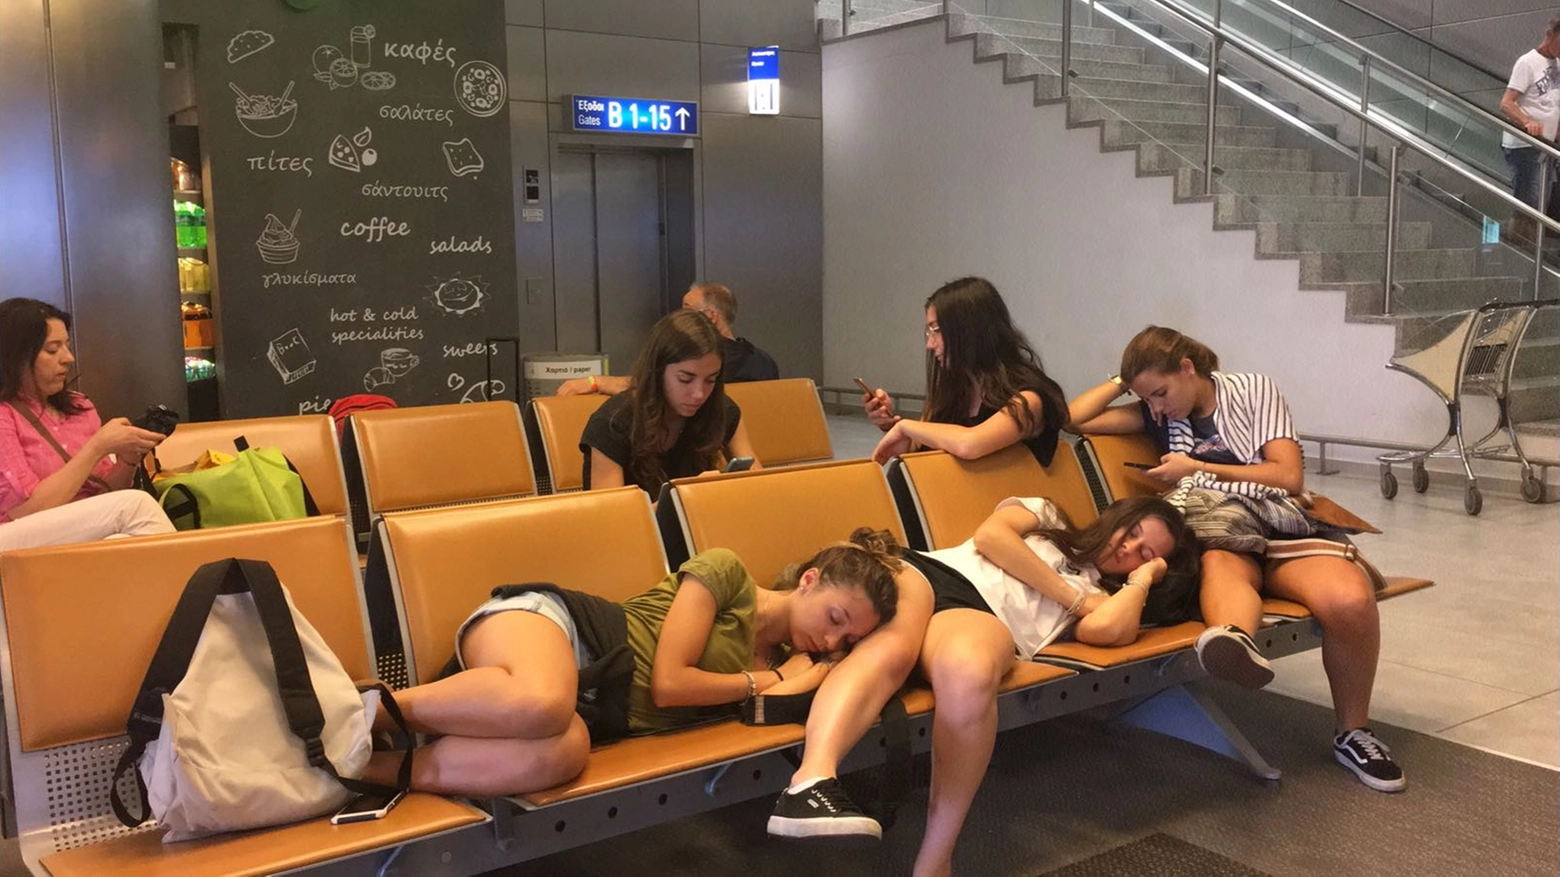 Le ragazze pesaresi, sfinite, in aeroporto ad Atene